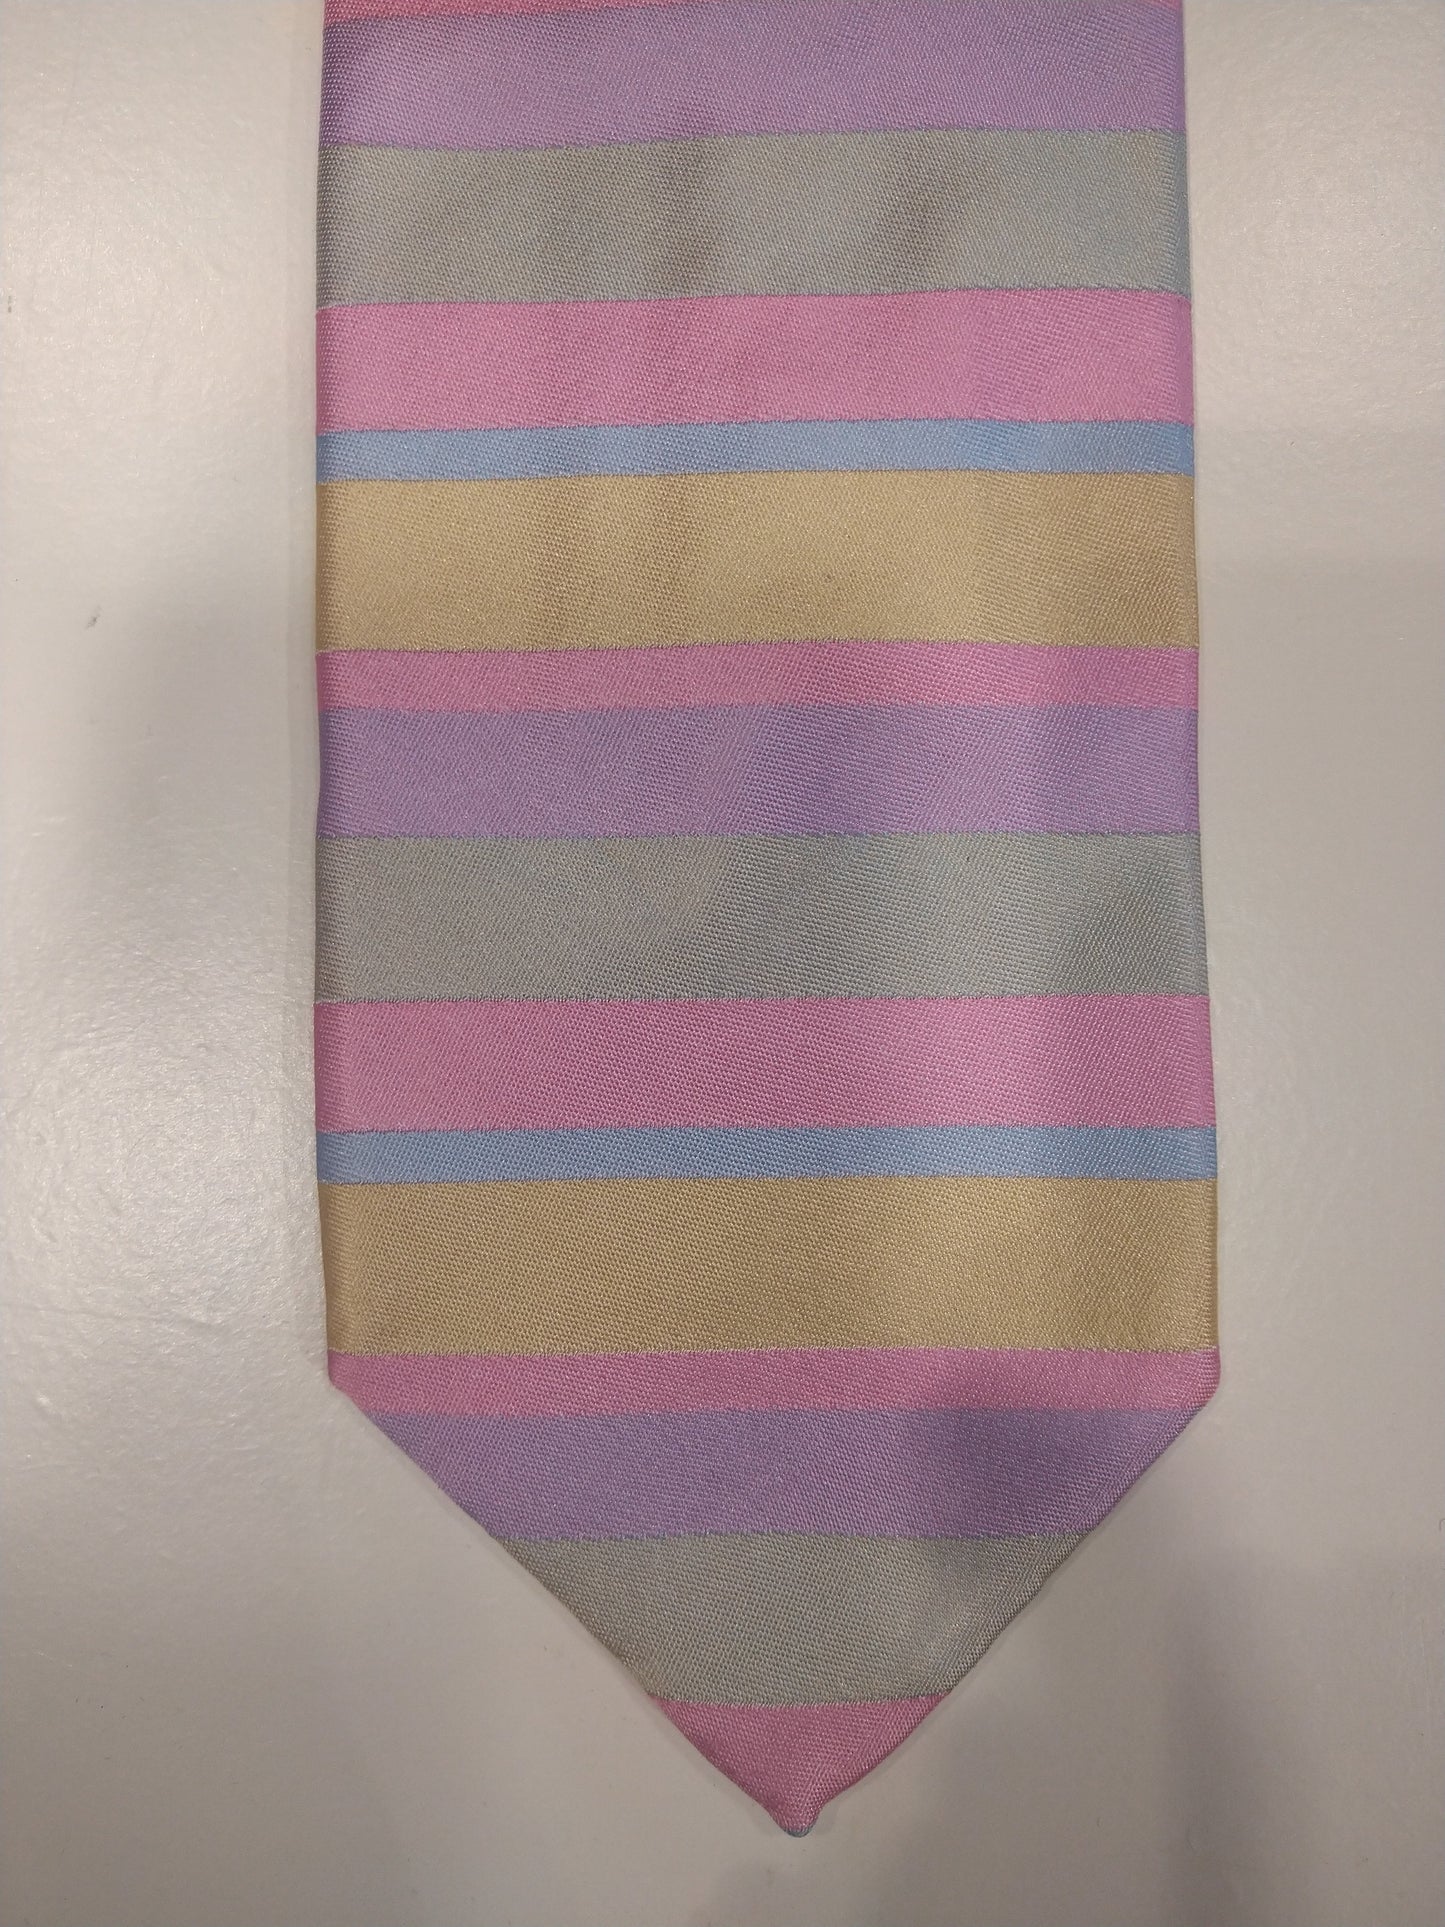 Jay Pee's hand made in Como zijde stropdas. Roze / paars / blauw / geel gestreept.